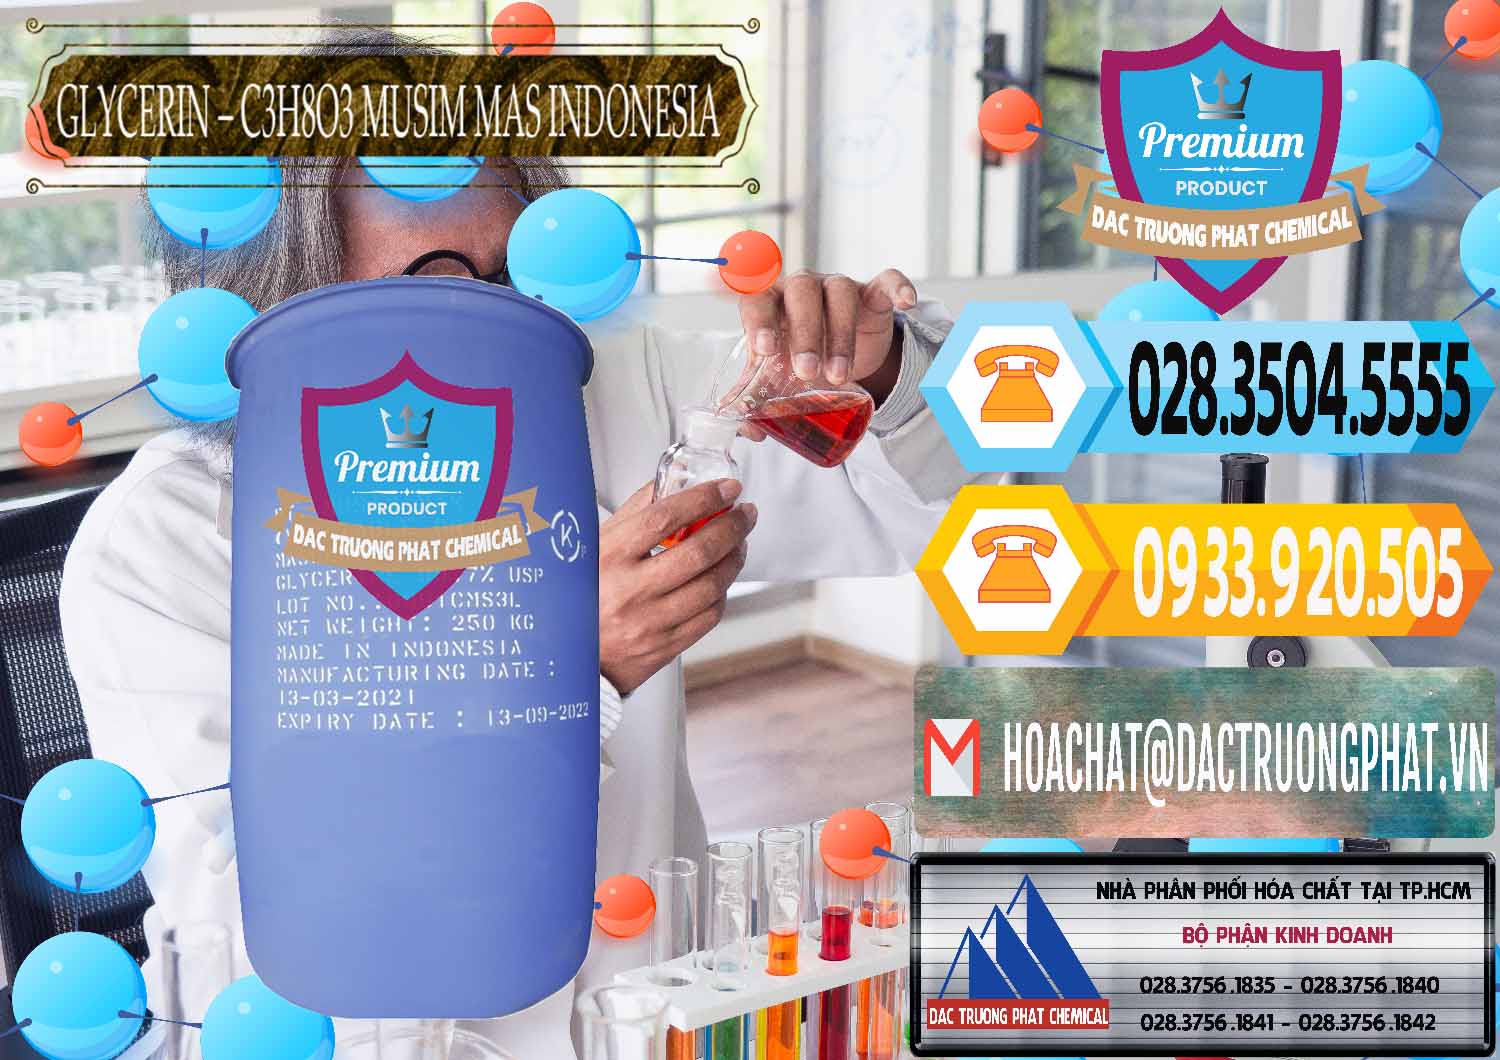 Công ty cung cấp _ bán Glycerin – C3H8O3 99.7% Musim Mas Indonesia - 0272 - Công ty chuyên bán _ phân phối hóa chất tại TP.HCM - hoachattayrua.net